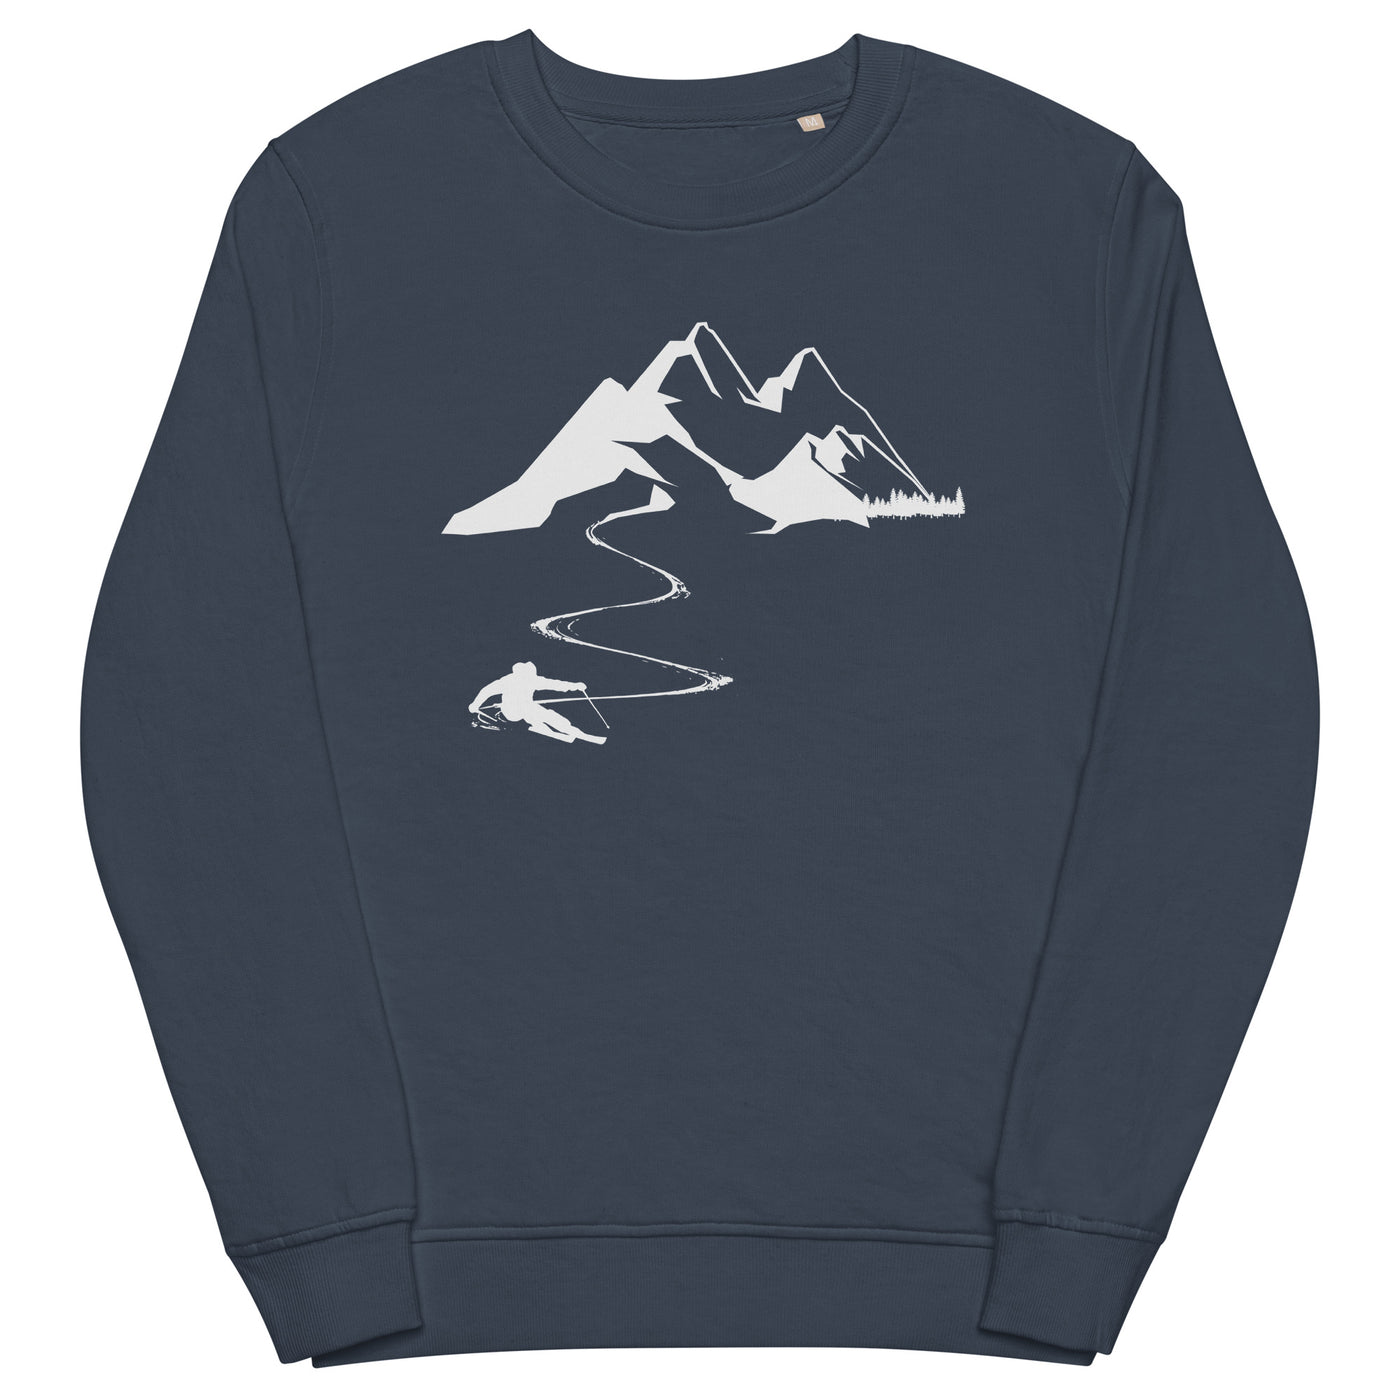 Skisüchtig - Unisex Premium Organic Sweatshirt klettern ski xxx yyy zzz French Navy